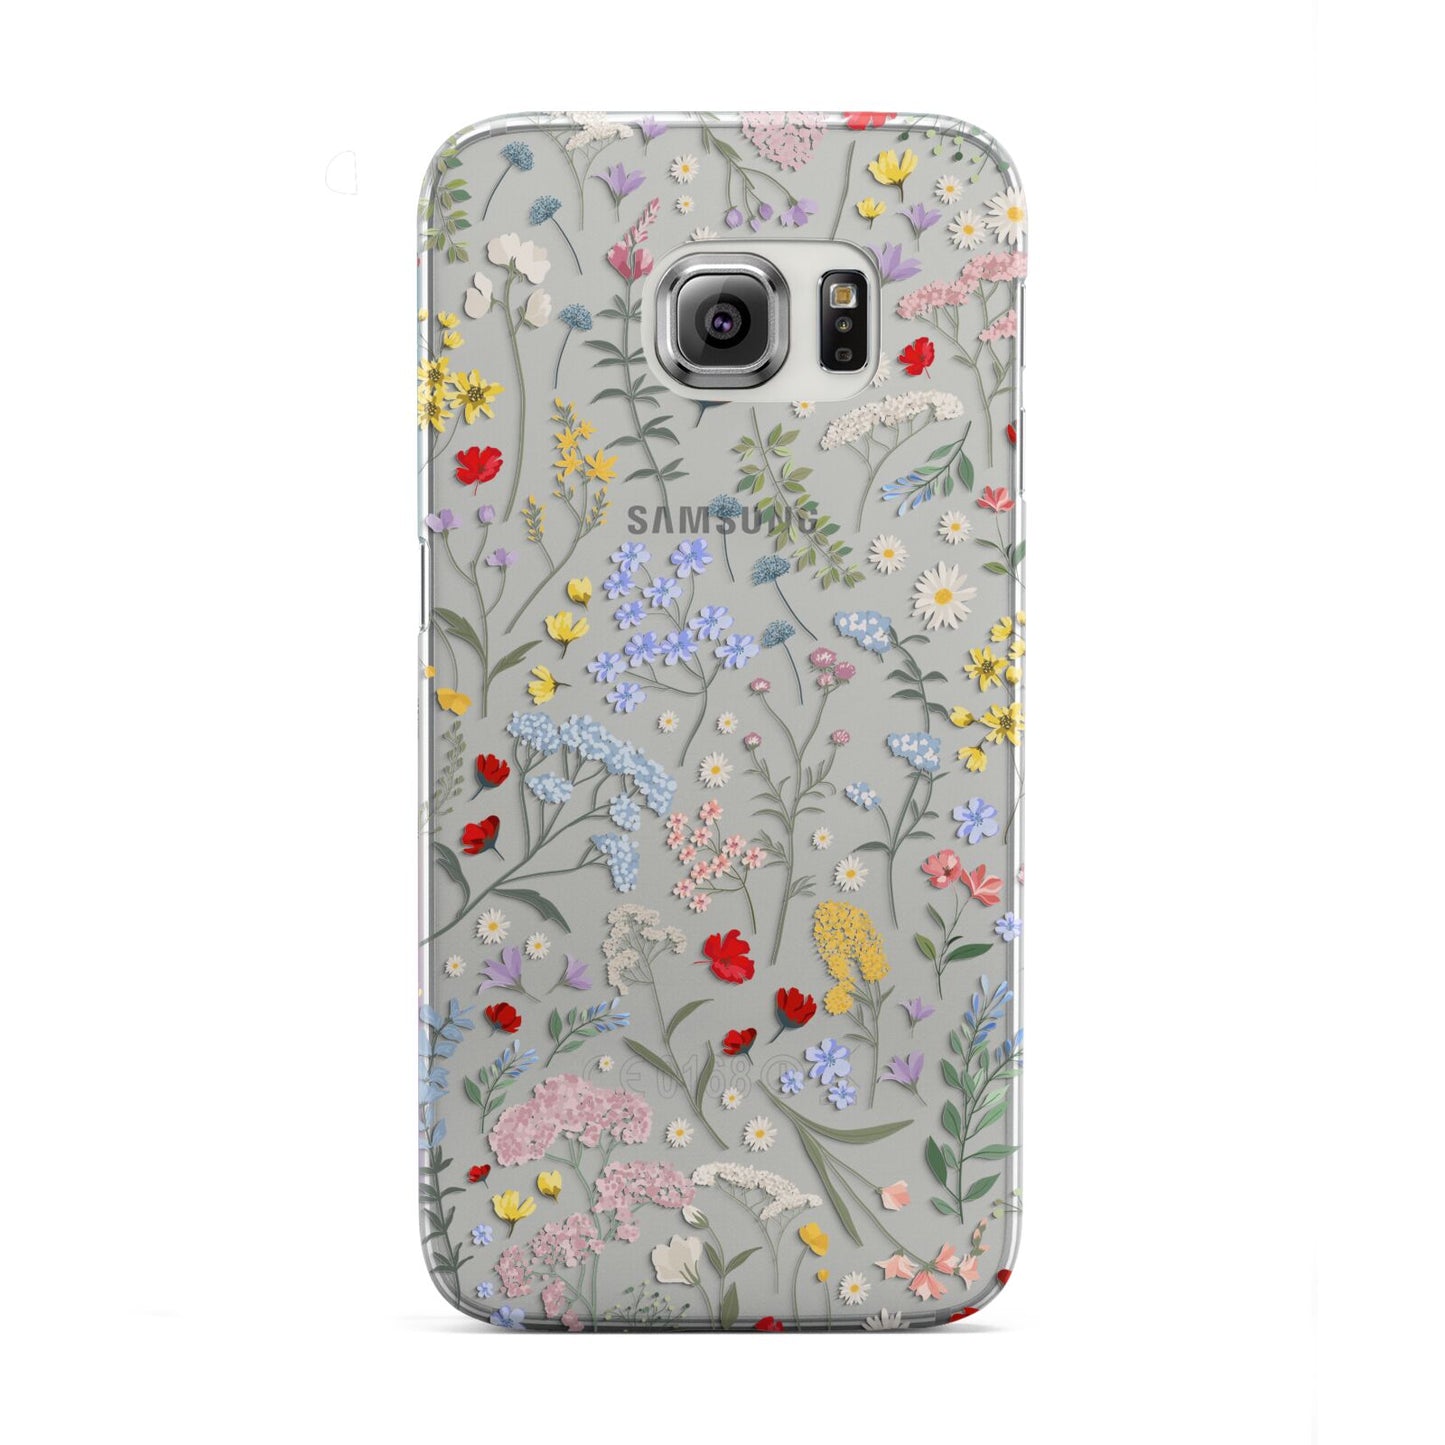 Wild Flowers Samsung Galaxy S6 Edge Case